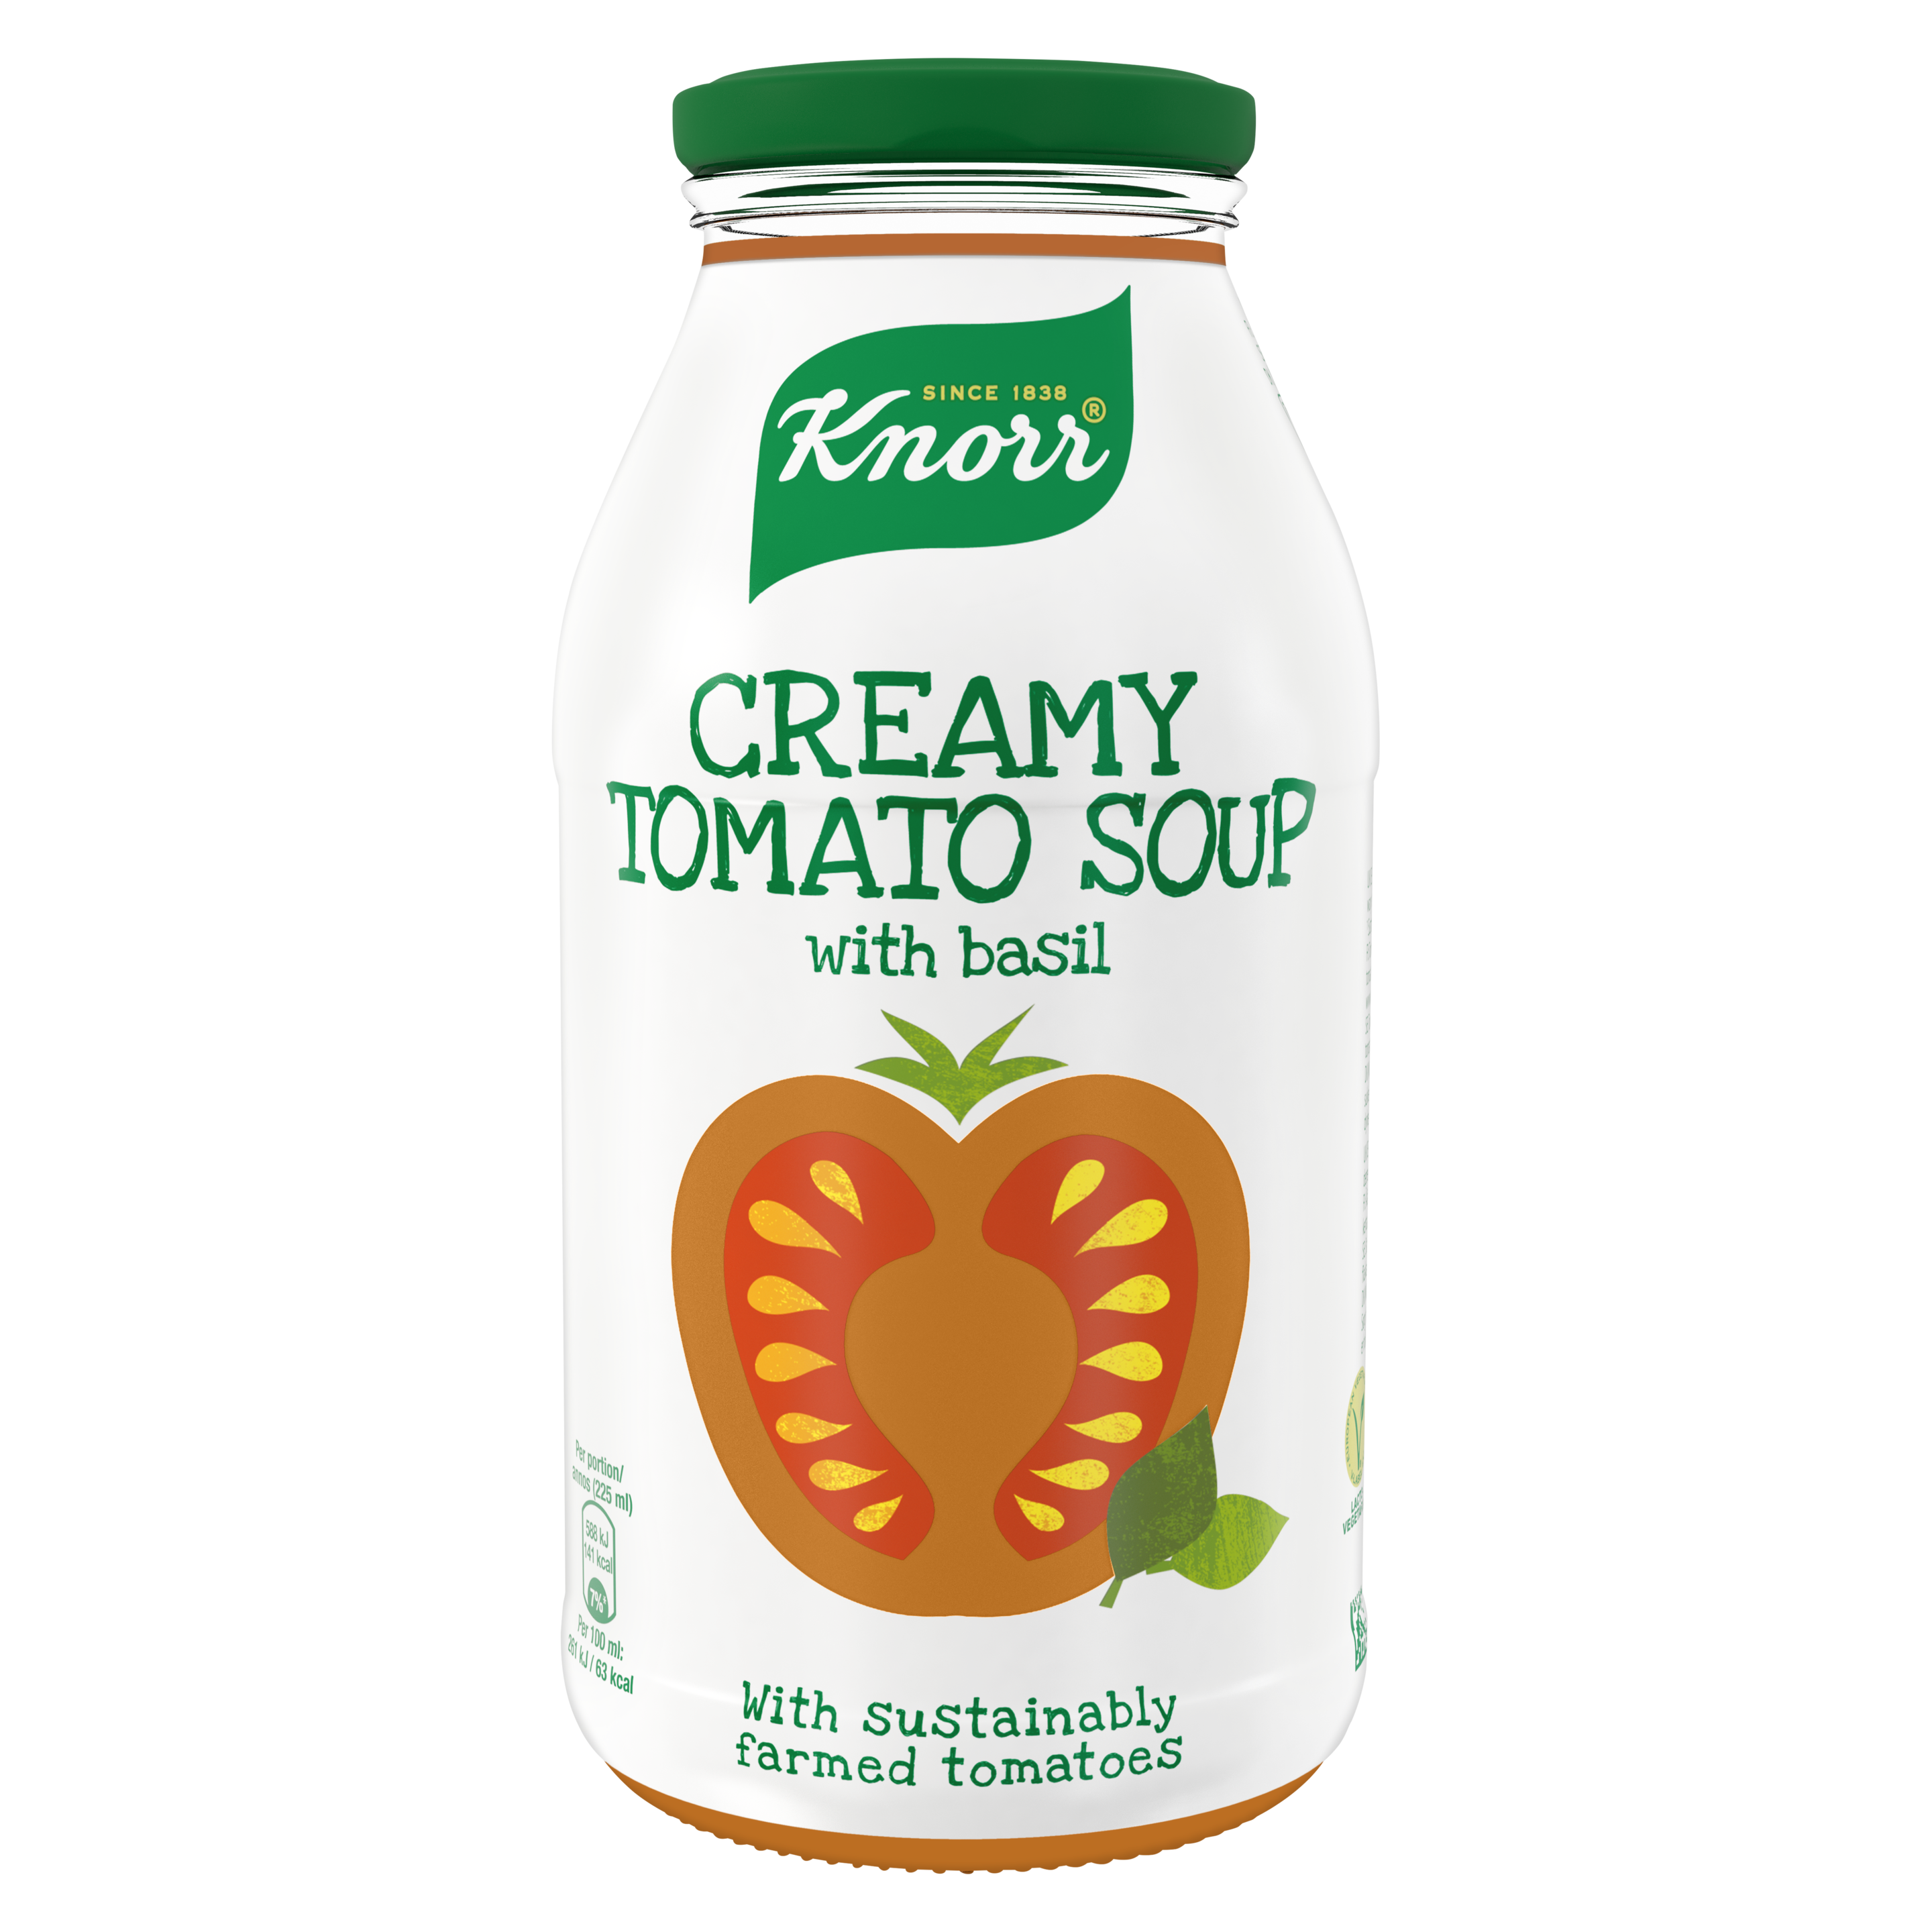 Creamy Tomato Soup